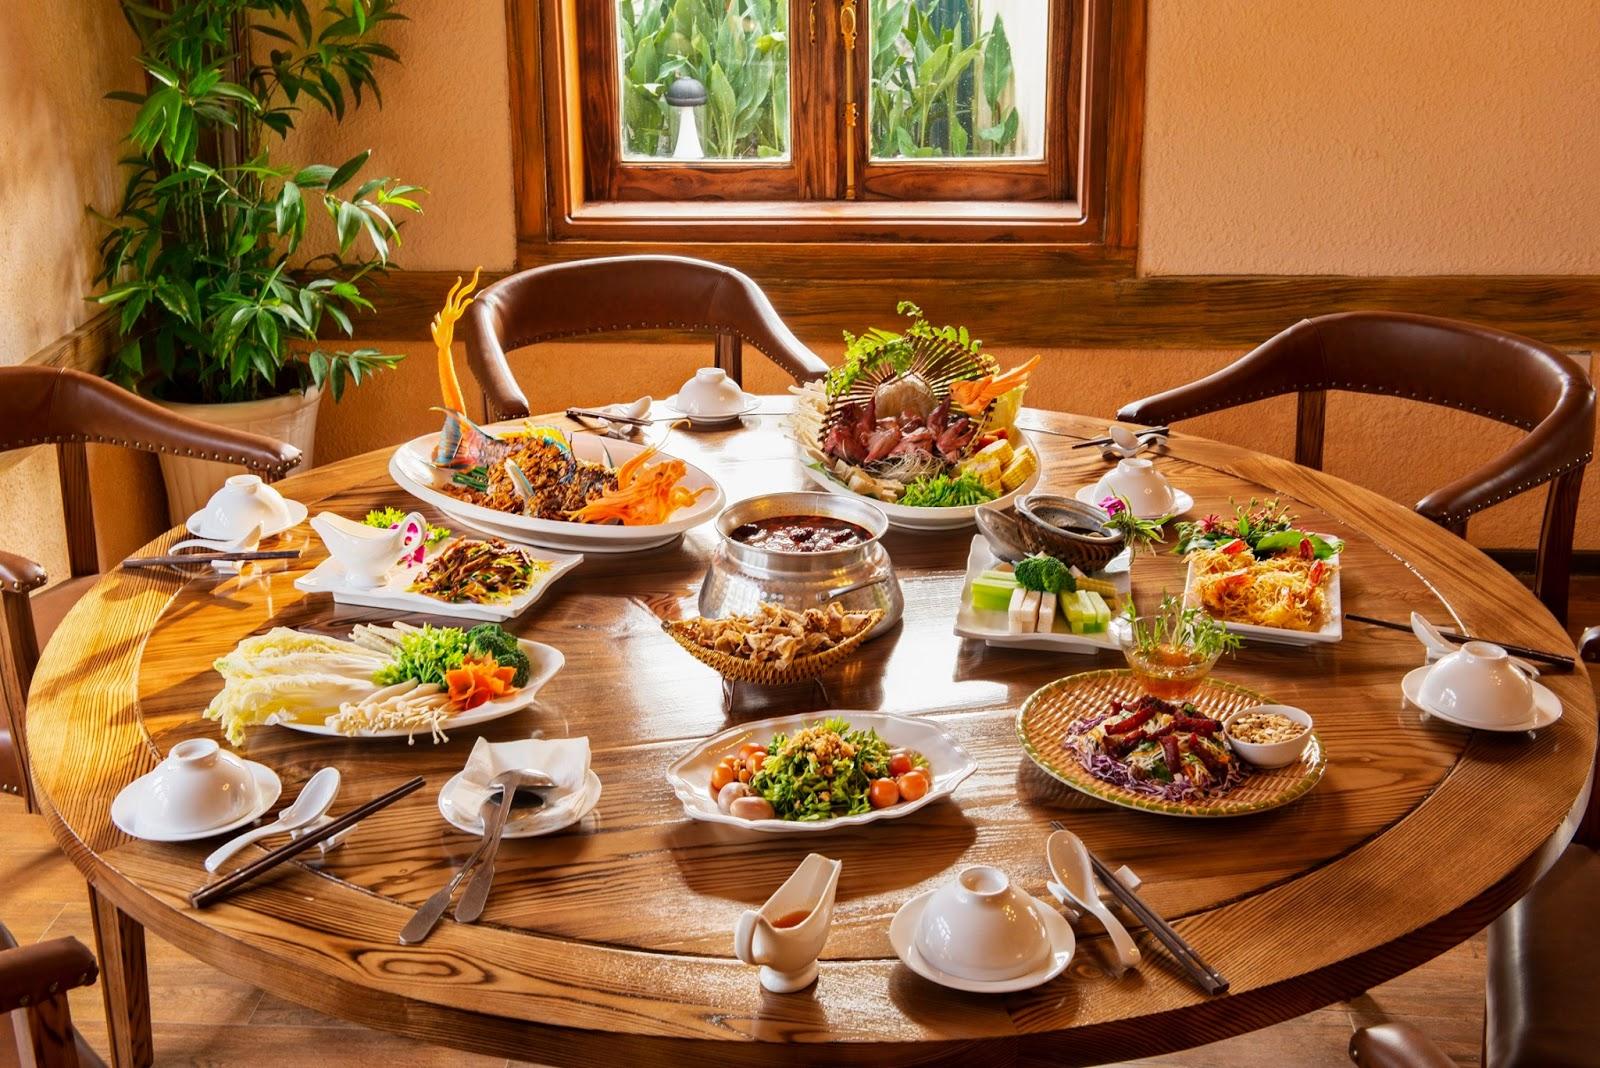 Tổng hợp địa điểm ăn uống trong khuôn viên Công viên Thiên Đường Bảo Sơn  2019